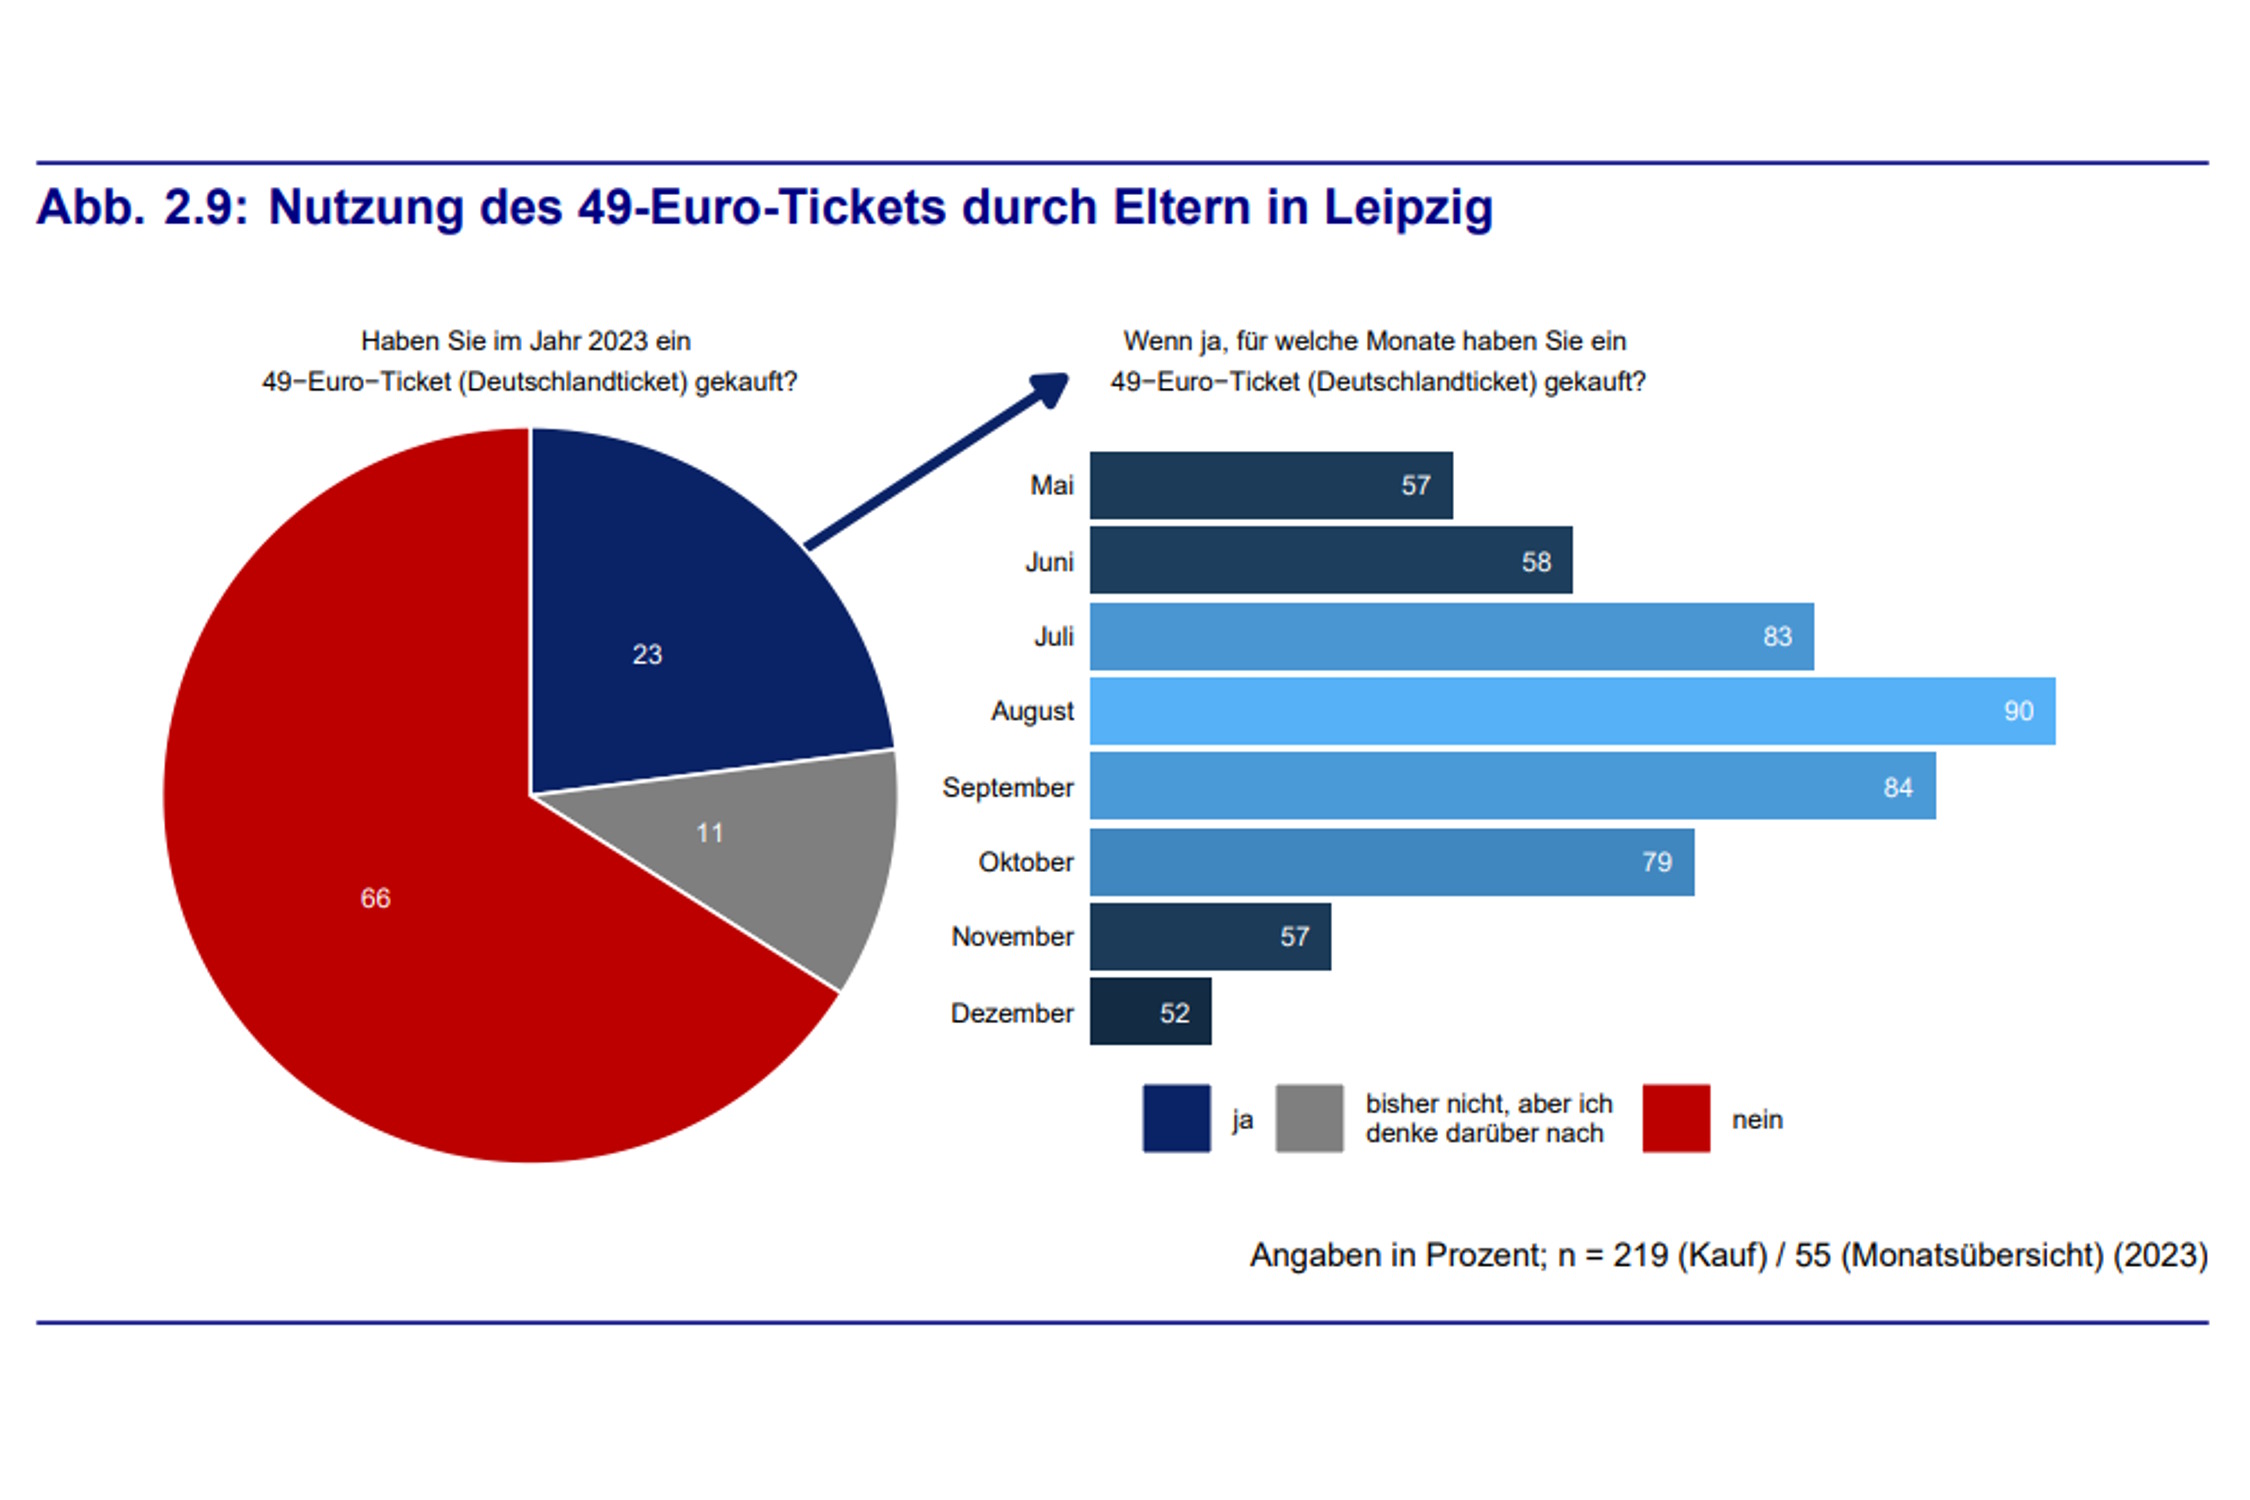 Zur Nutzung des D-Tickets durch Eltern mit Kindern bis 14 Jahre. Grafik: Stadt Leipzig, Bürgerumfrage 2023